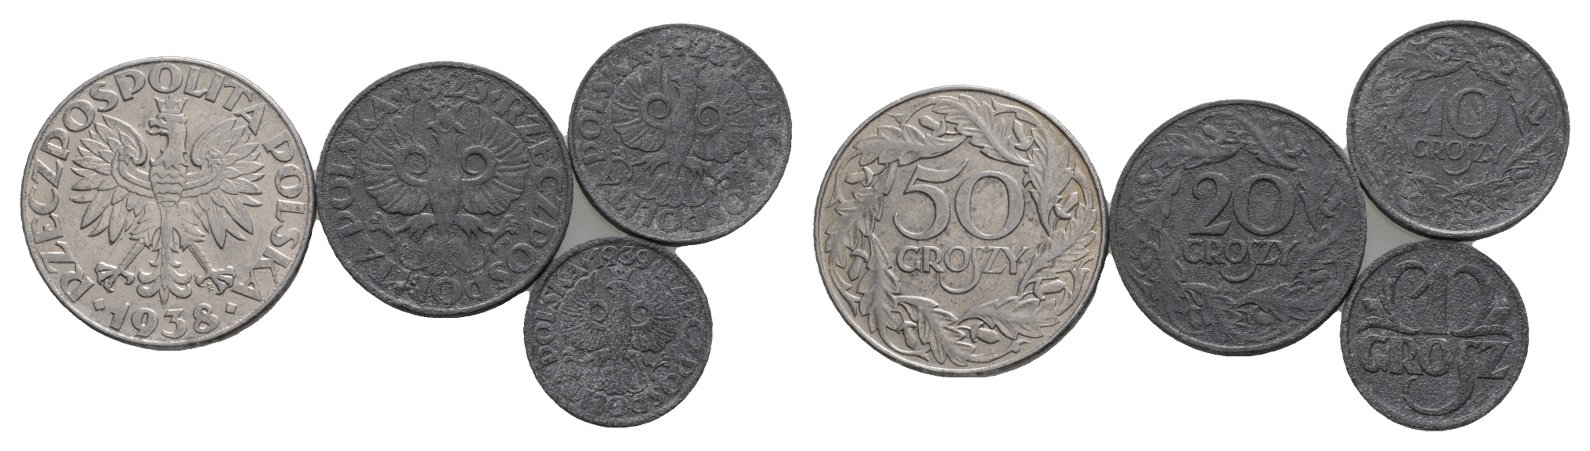  Polen; 4 Kleinmünzen; 19293/1938/1939   